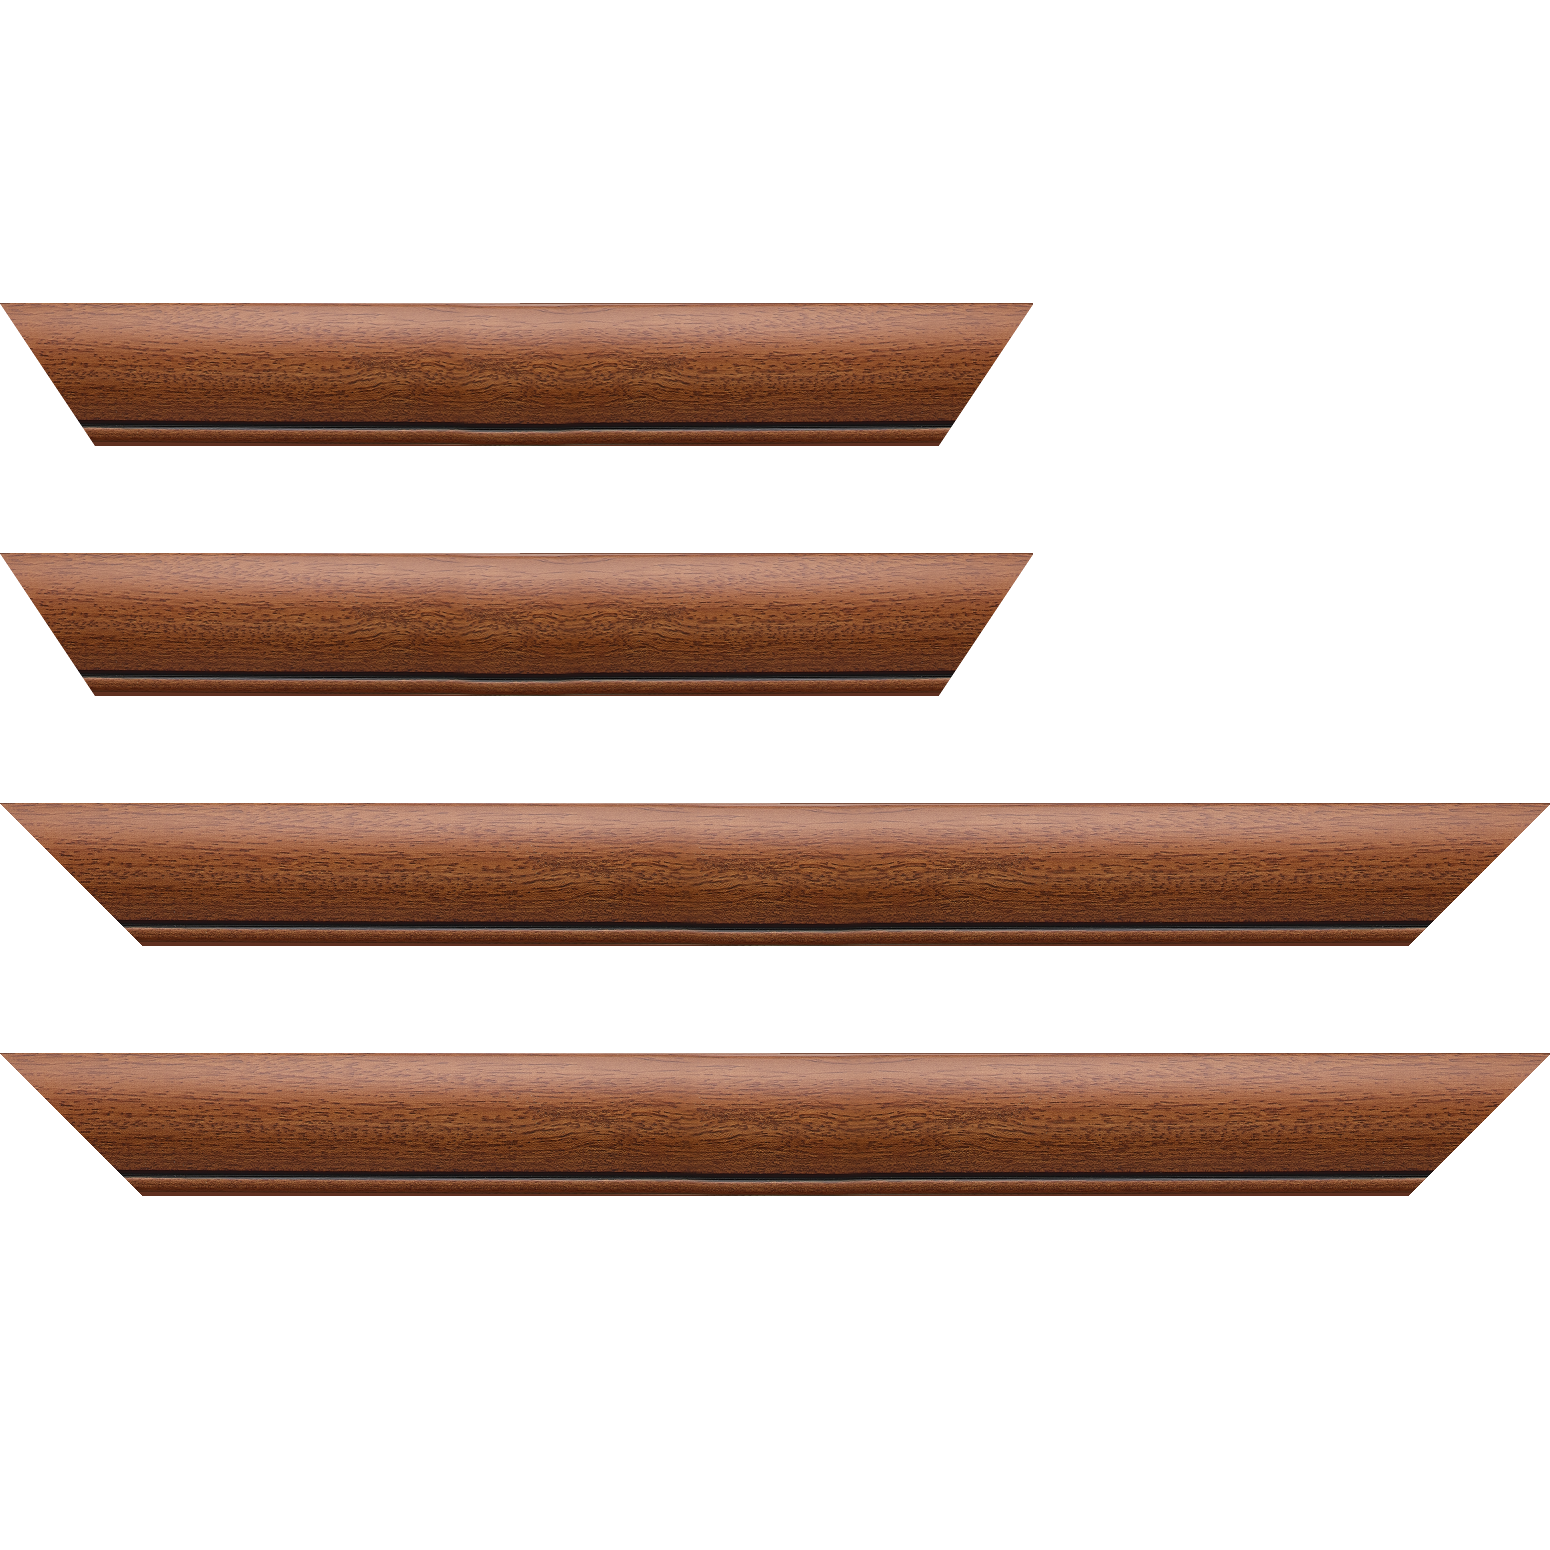 Baguette bois profil arrondi largeur 4.7cm couleur marron ton bois satiné rehaussé d'un filet noir